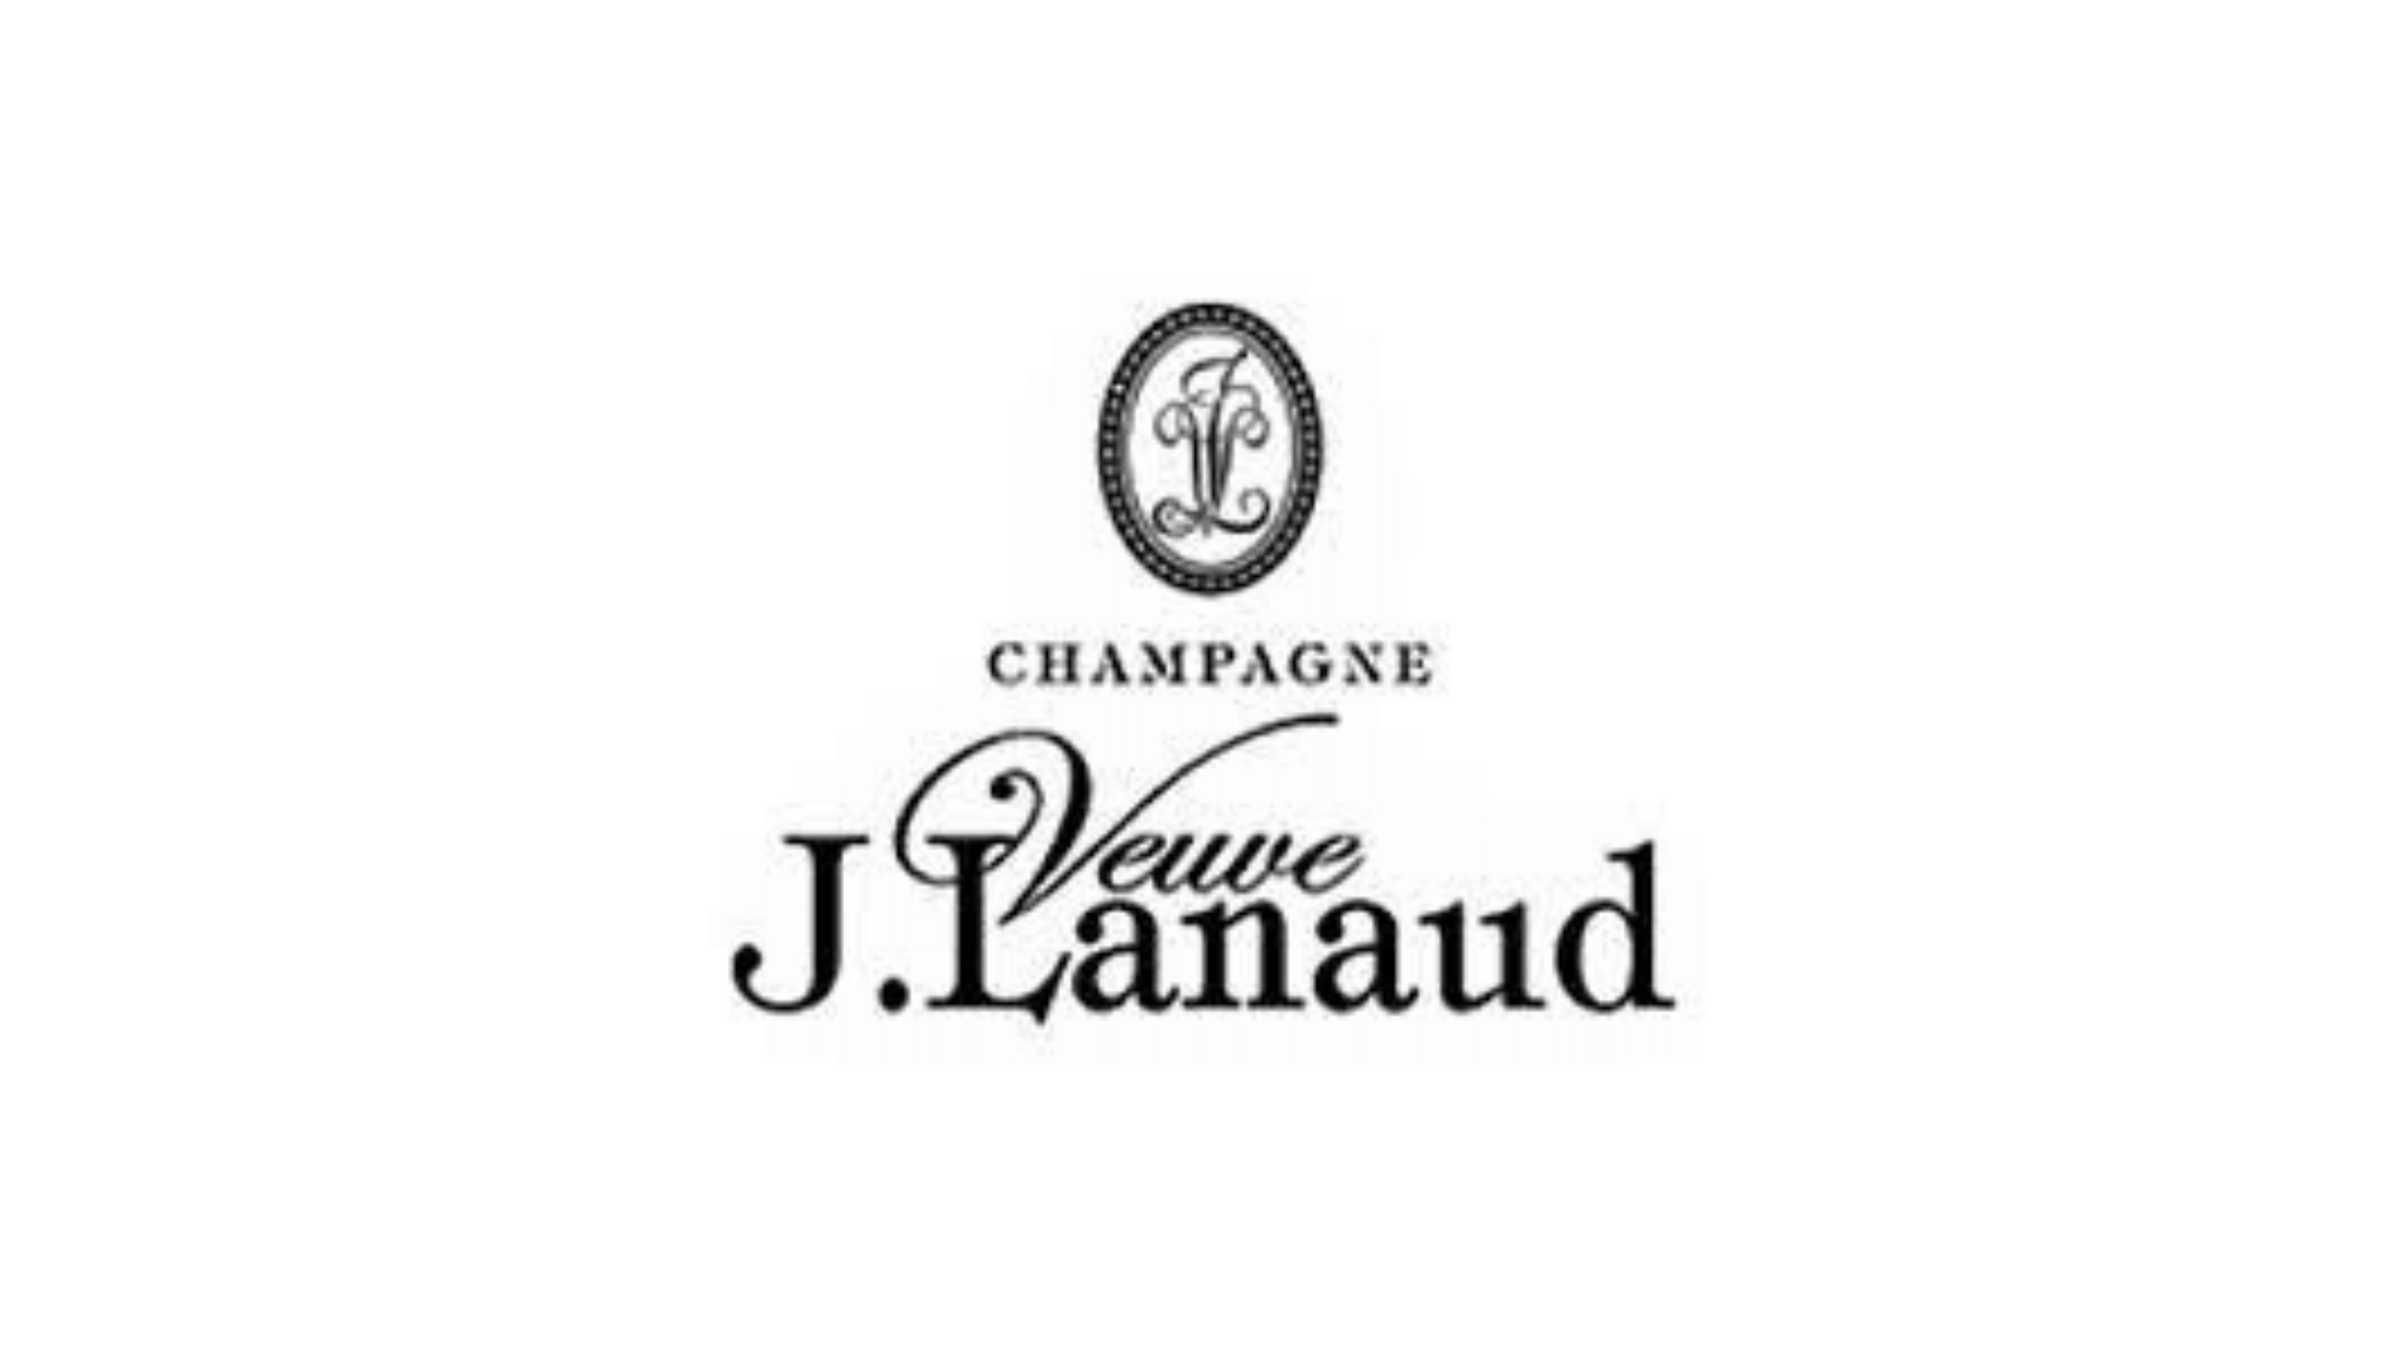 Lanaud – J. Veuve Champagnifique